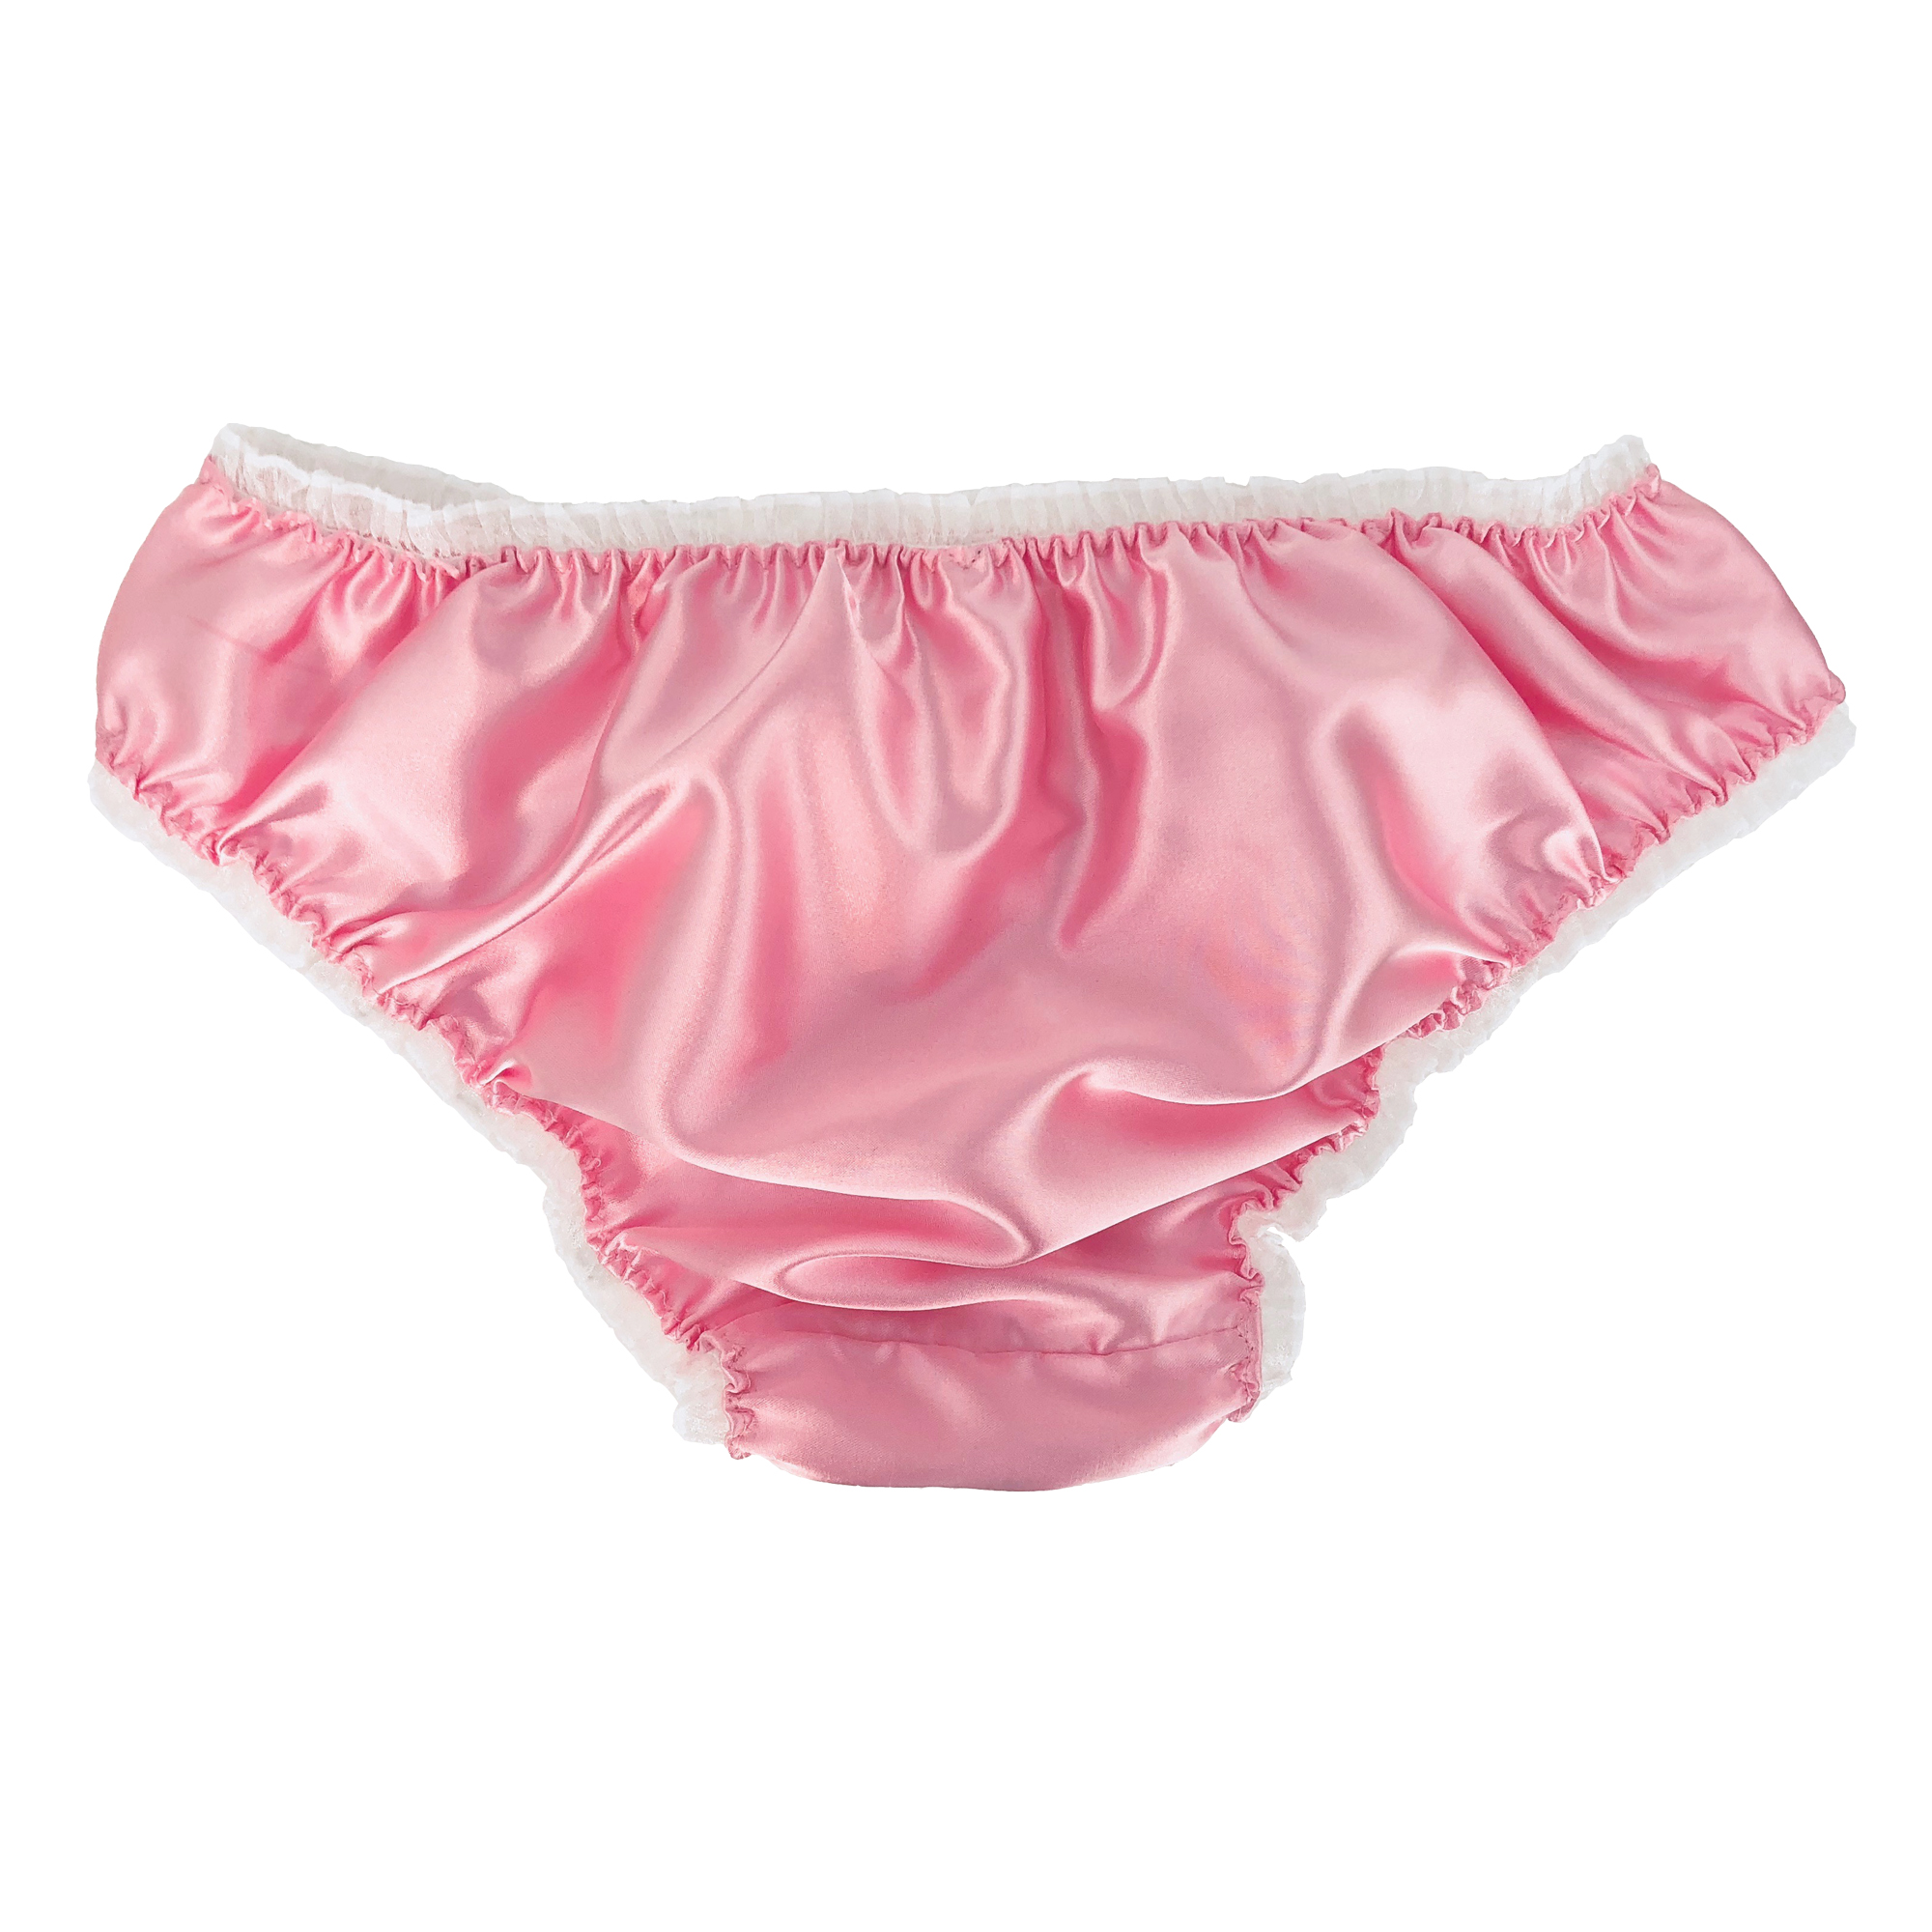 Baby Pink Satin R Schen Sissy Panty Bikini H Schen Unterw Sche Slips